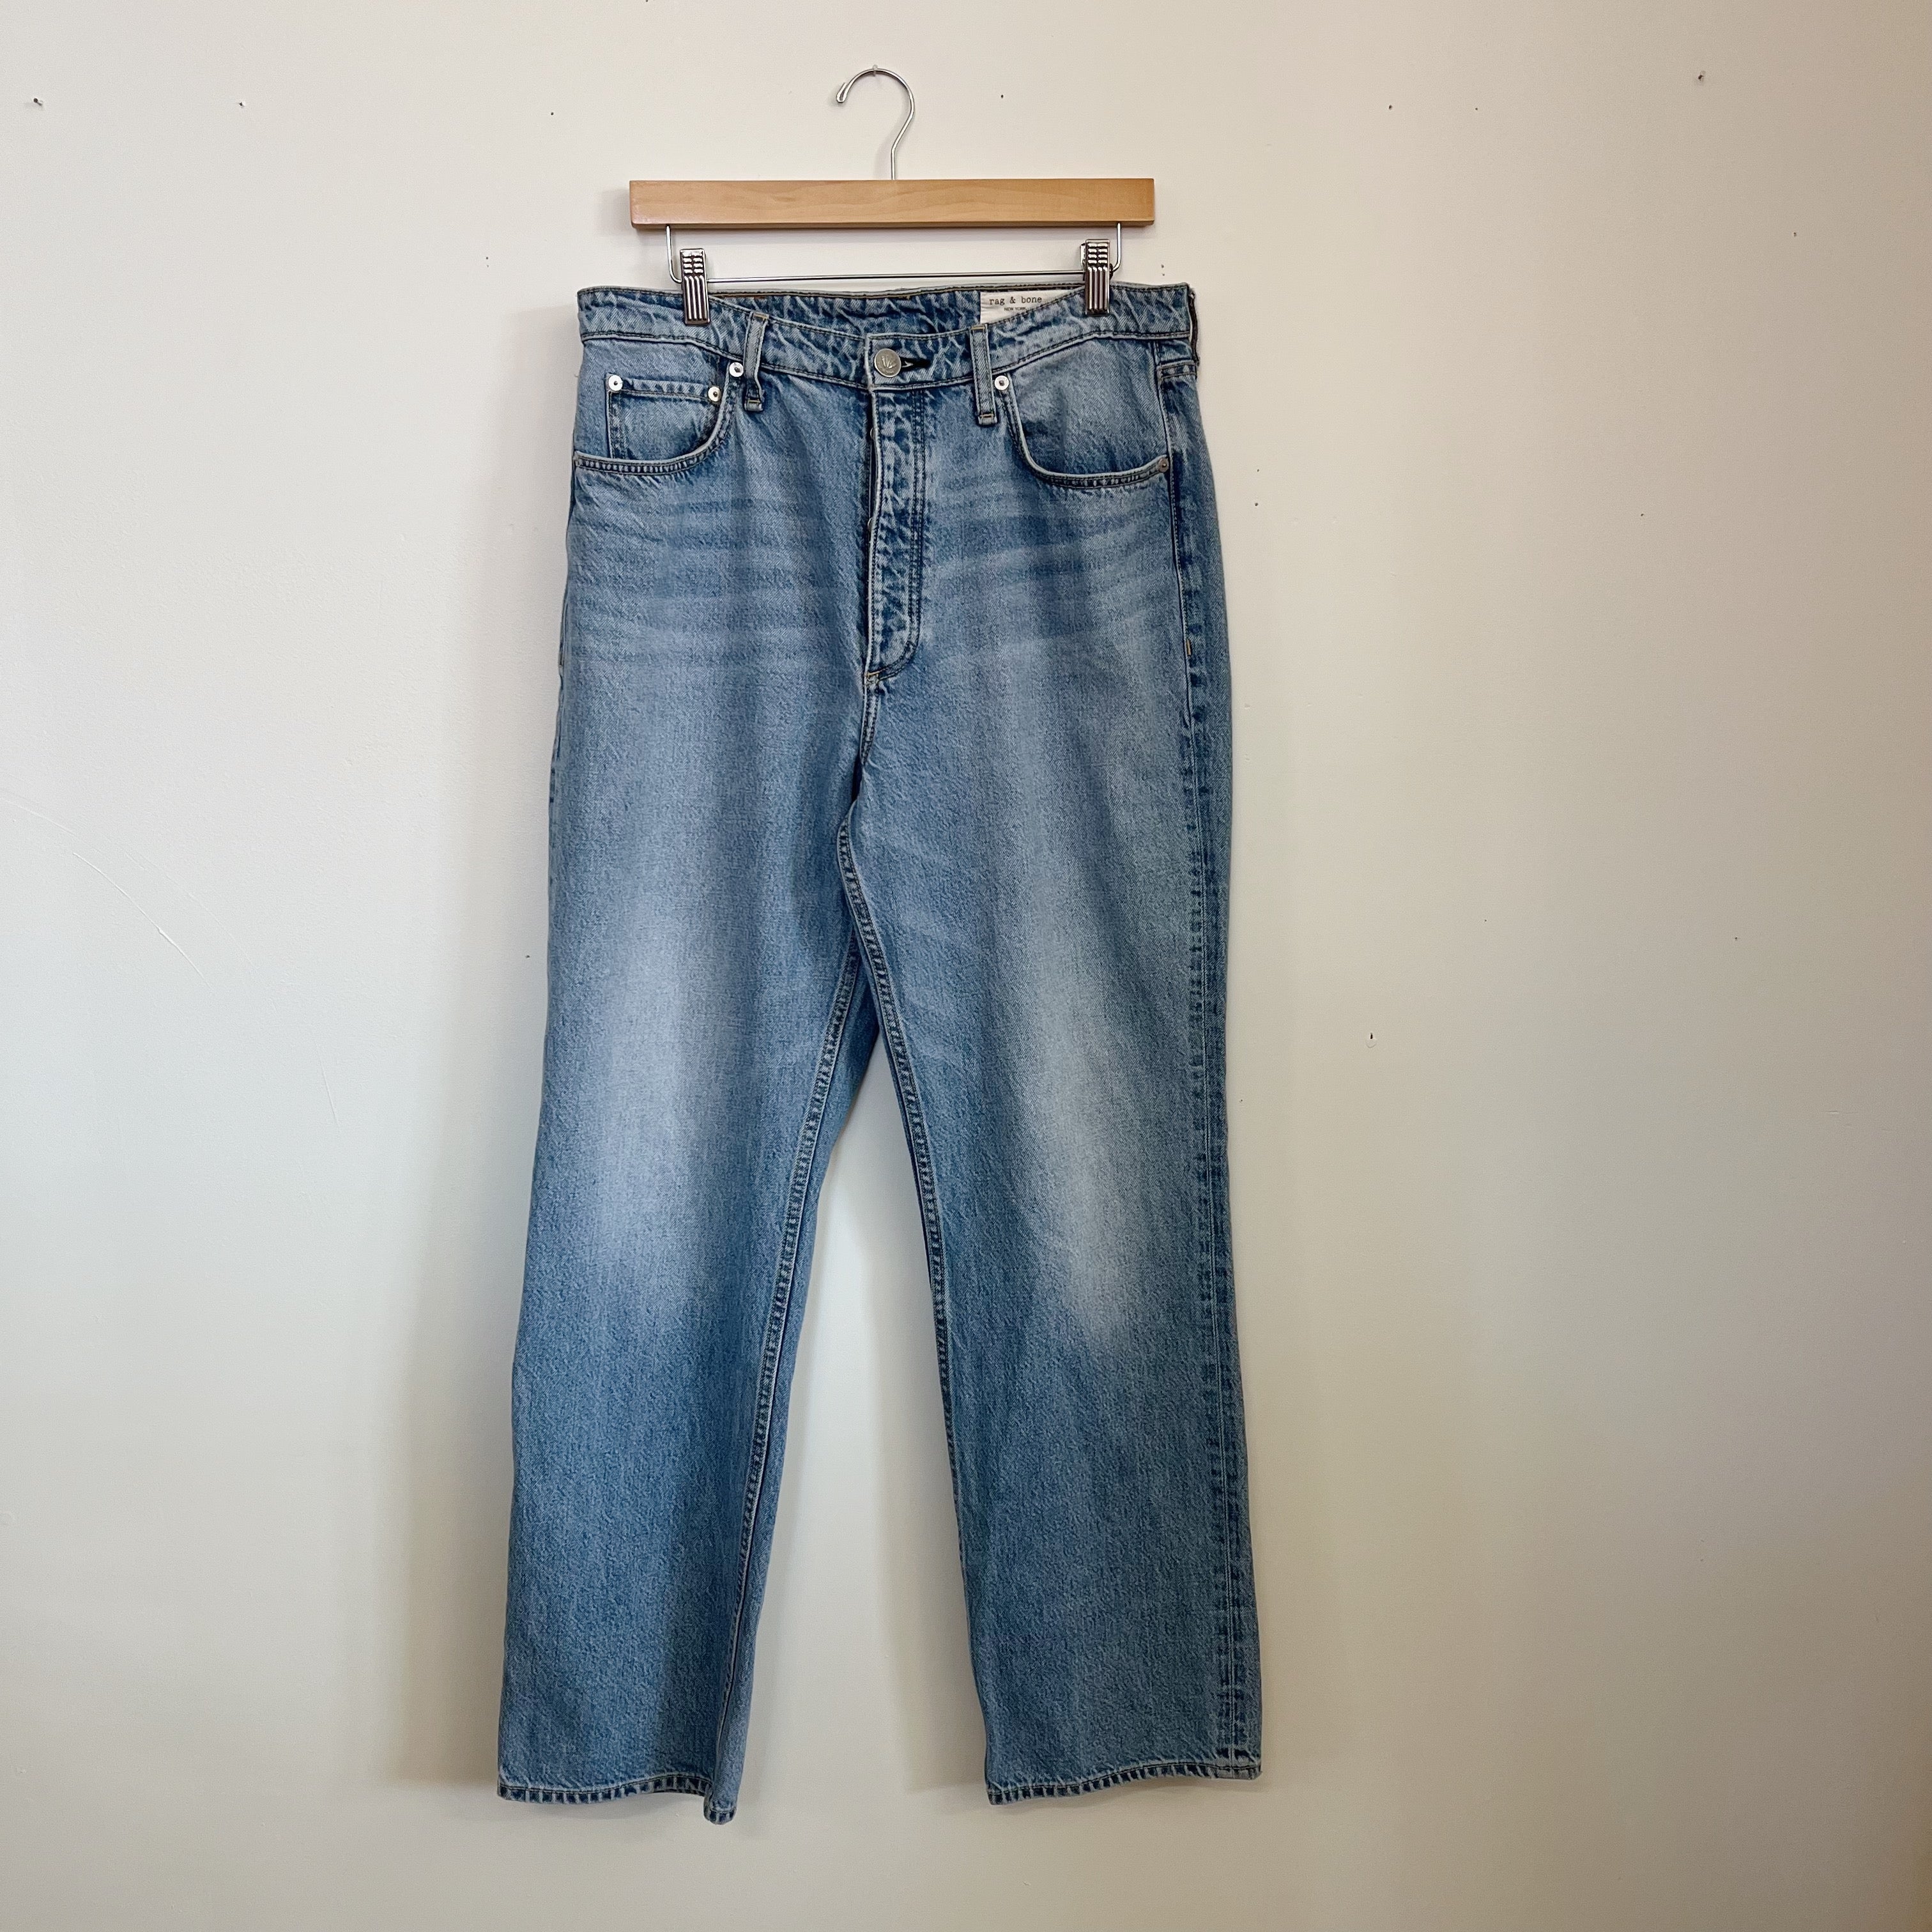 Size 12/31 | Rag & Bone Jeans